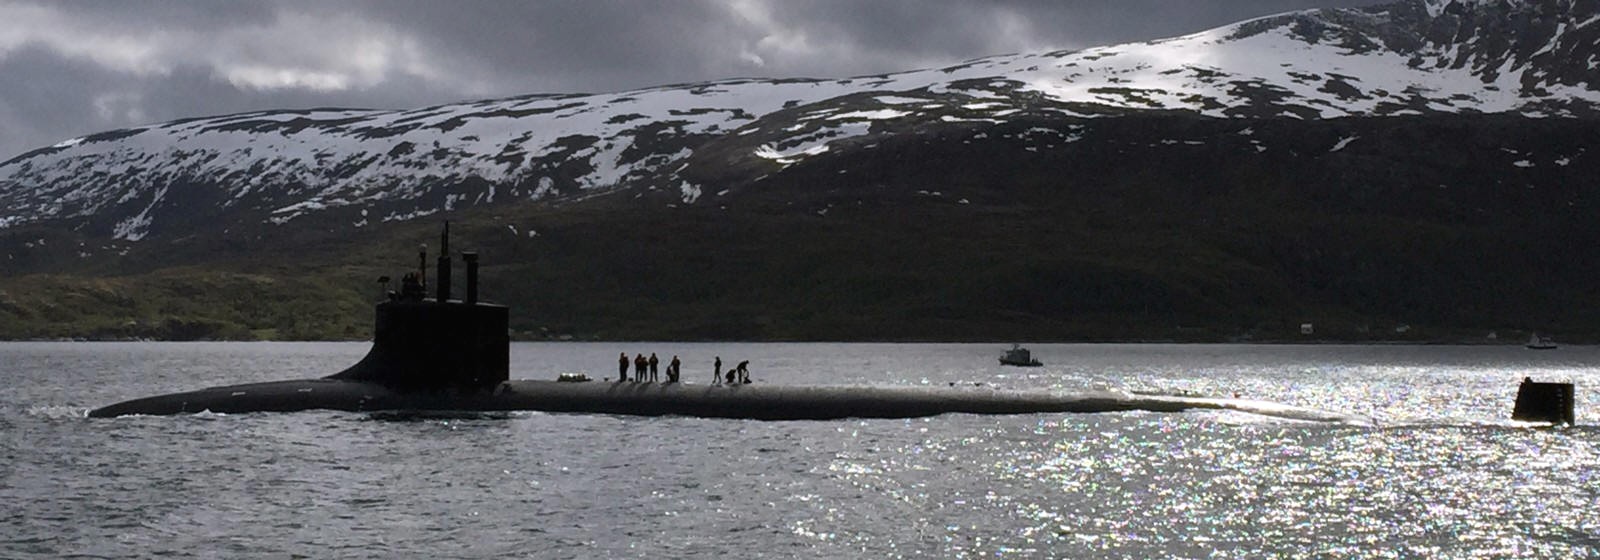 ssn-21 uss seawolf attack submarine us navy norwegian sea 14